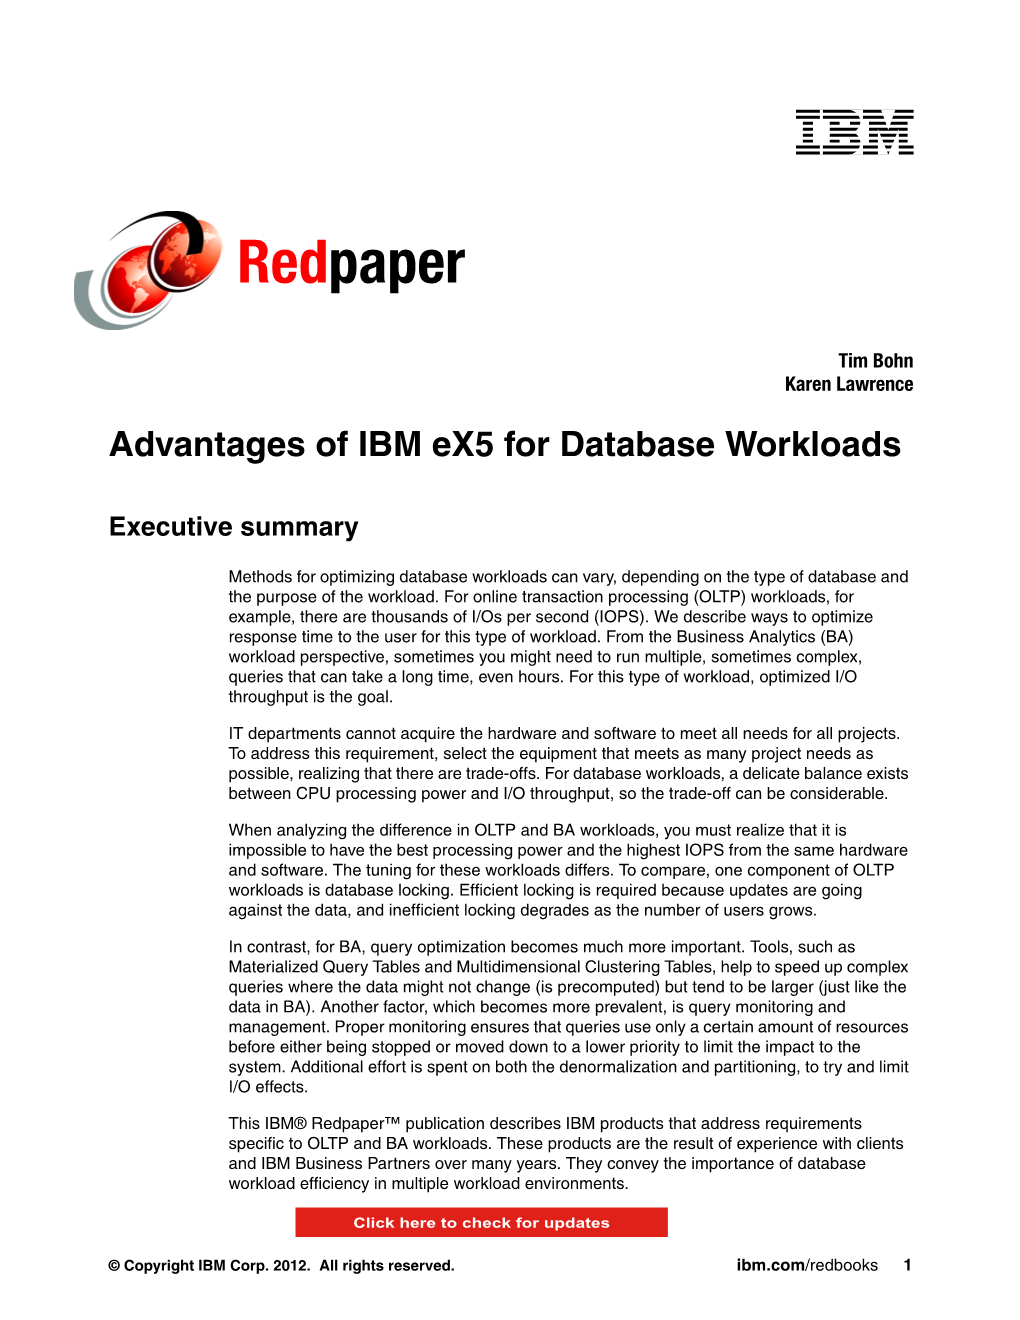 Advantages of IBM Ex5 for Database Workloads